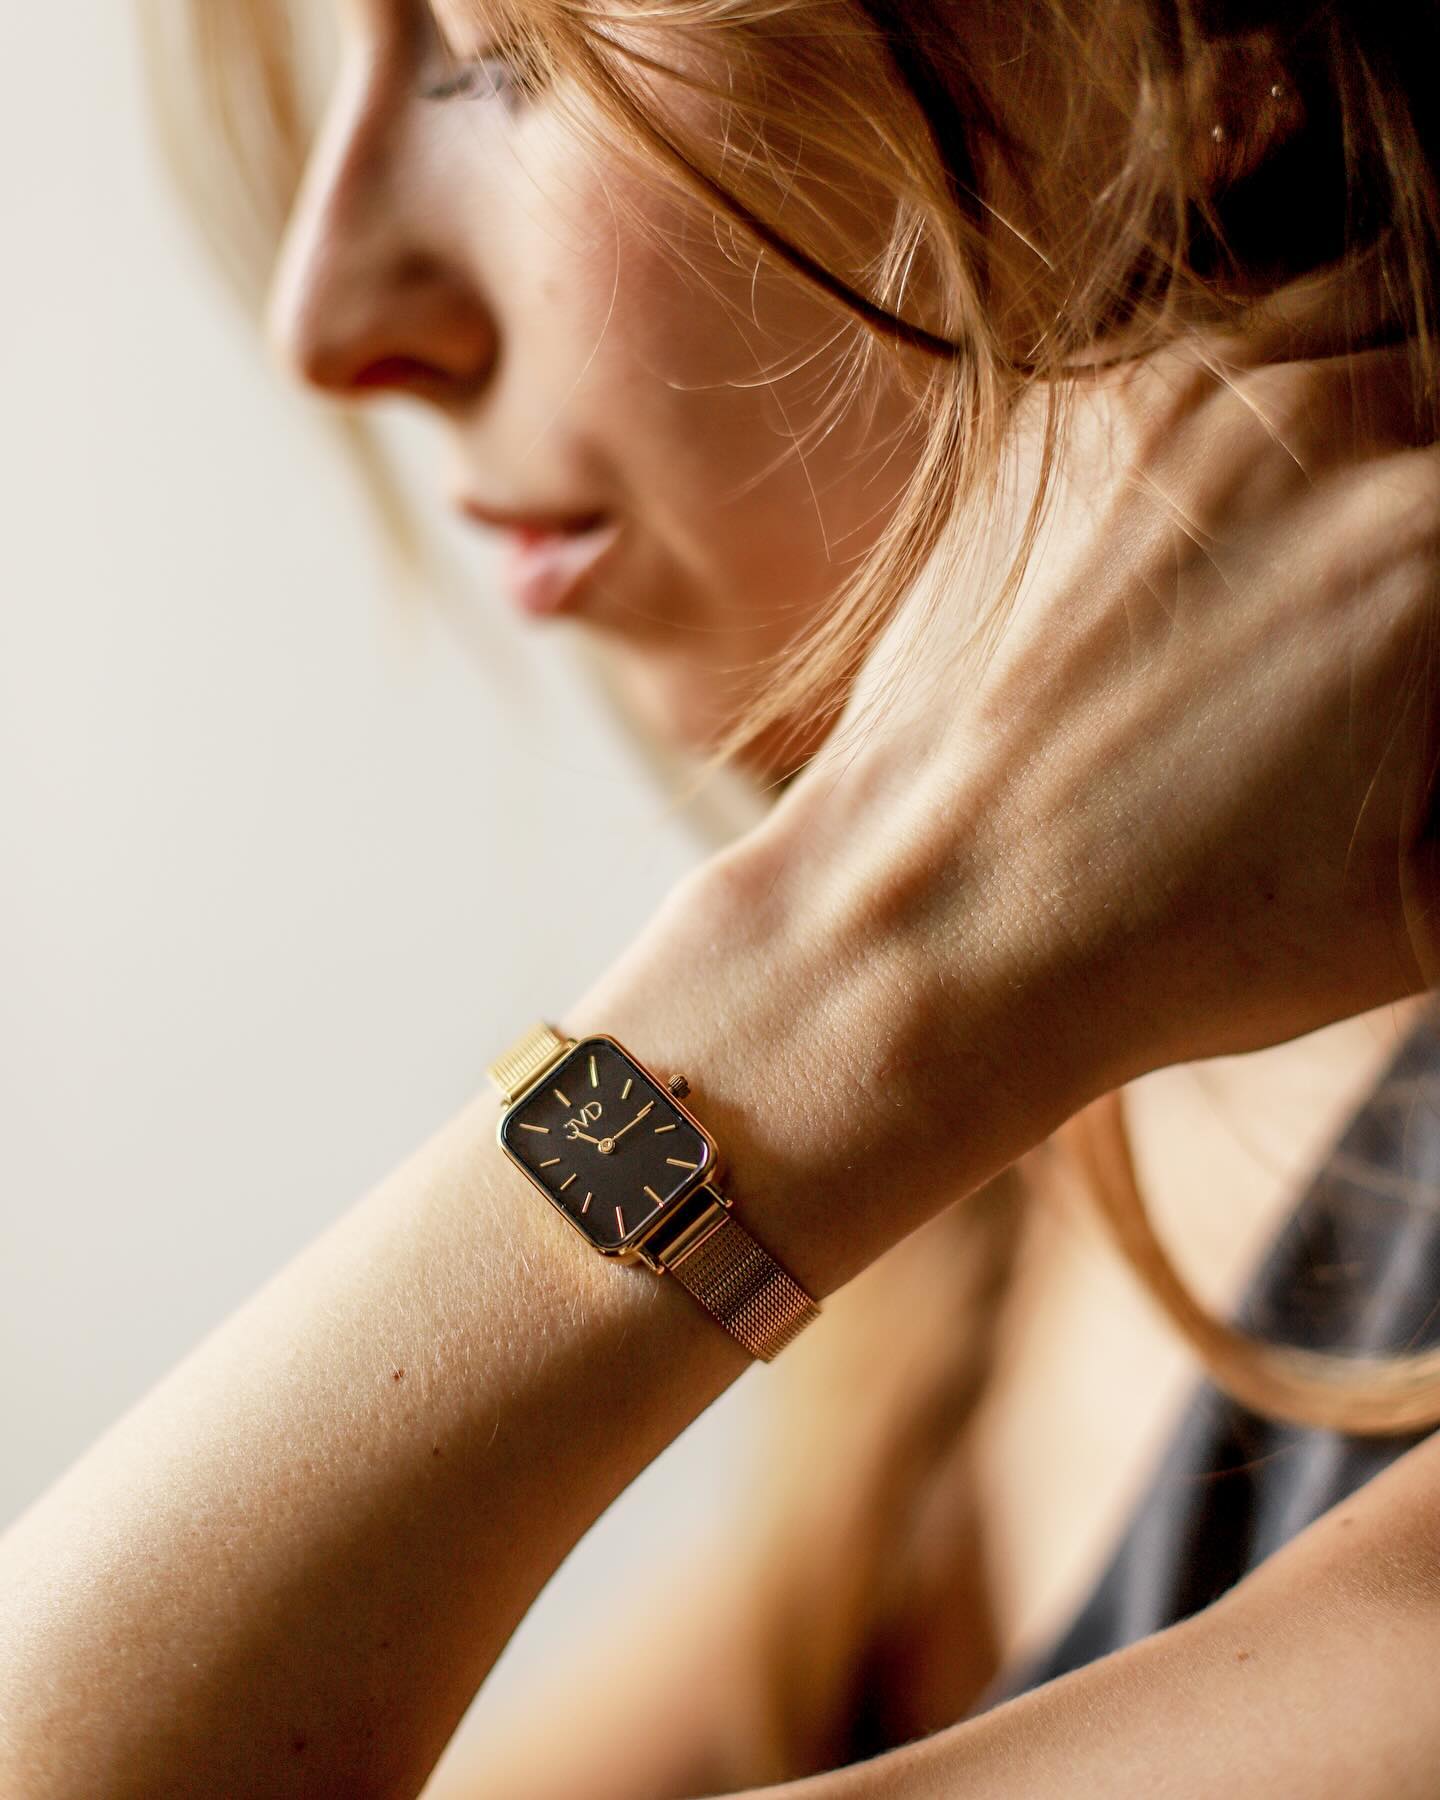 Proč zvolit hodinky s milánským řemínkem? 👀🤍 

🔗 Milánský řemínek je vyroben z jemného tkaného kovu, který vypadá velmi elegantně a sofistikovaně.
🔗 Díky své flexibilitě se přizpůsobuje tvaru zápěstí a poskytuje naprosté pohodlí. 🧘🏼‍♀️ 
🔗 Hodí se k různým typům hodinek a outfitů. Lze ho nosit na formální události, ale i na každodenní nošení. 

Omrkněte naši nabídku hodinek s milánským řemínkem na www.vlahova.cz.✨

#JVD #watch #watches #accessories #jewelry #jewellery